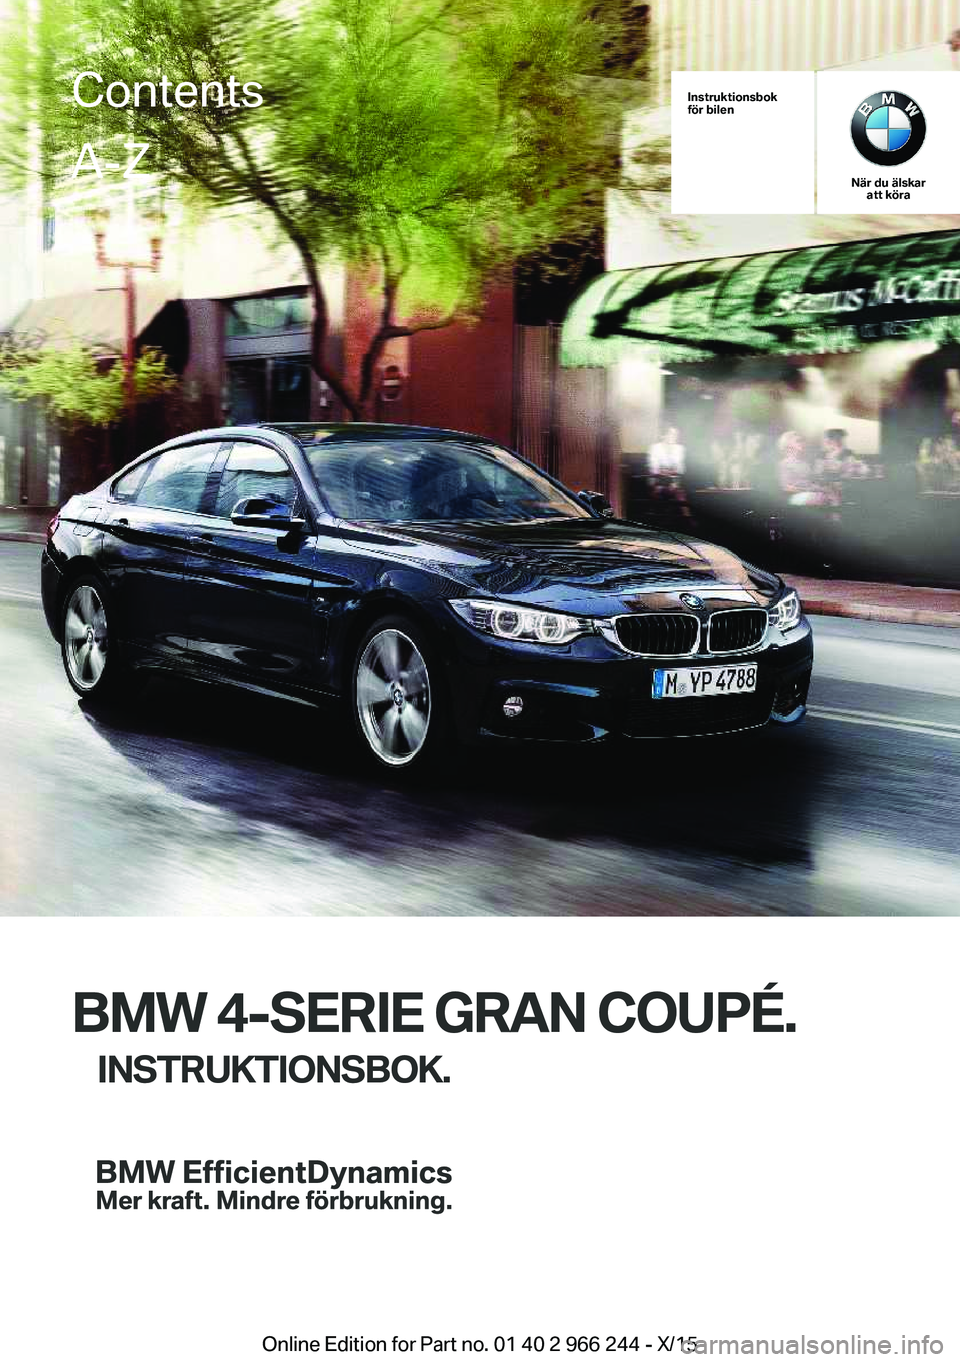 BMW 4 SERIES GRAN COUPE 2016  InstruktionsbÖcker (in Swedish) Instruktionsbok
för bilen
När du älskar att köra
BMW 4-SERIE GRAN COUPÉ.
INSTRUKTIONSBOK.
ContentsA-Z
Online Edition for Part no. 01 40 2 966 244 - X/15   